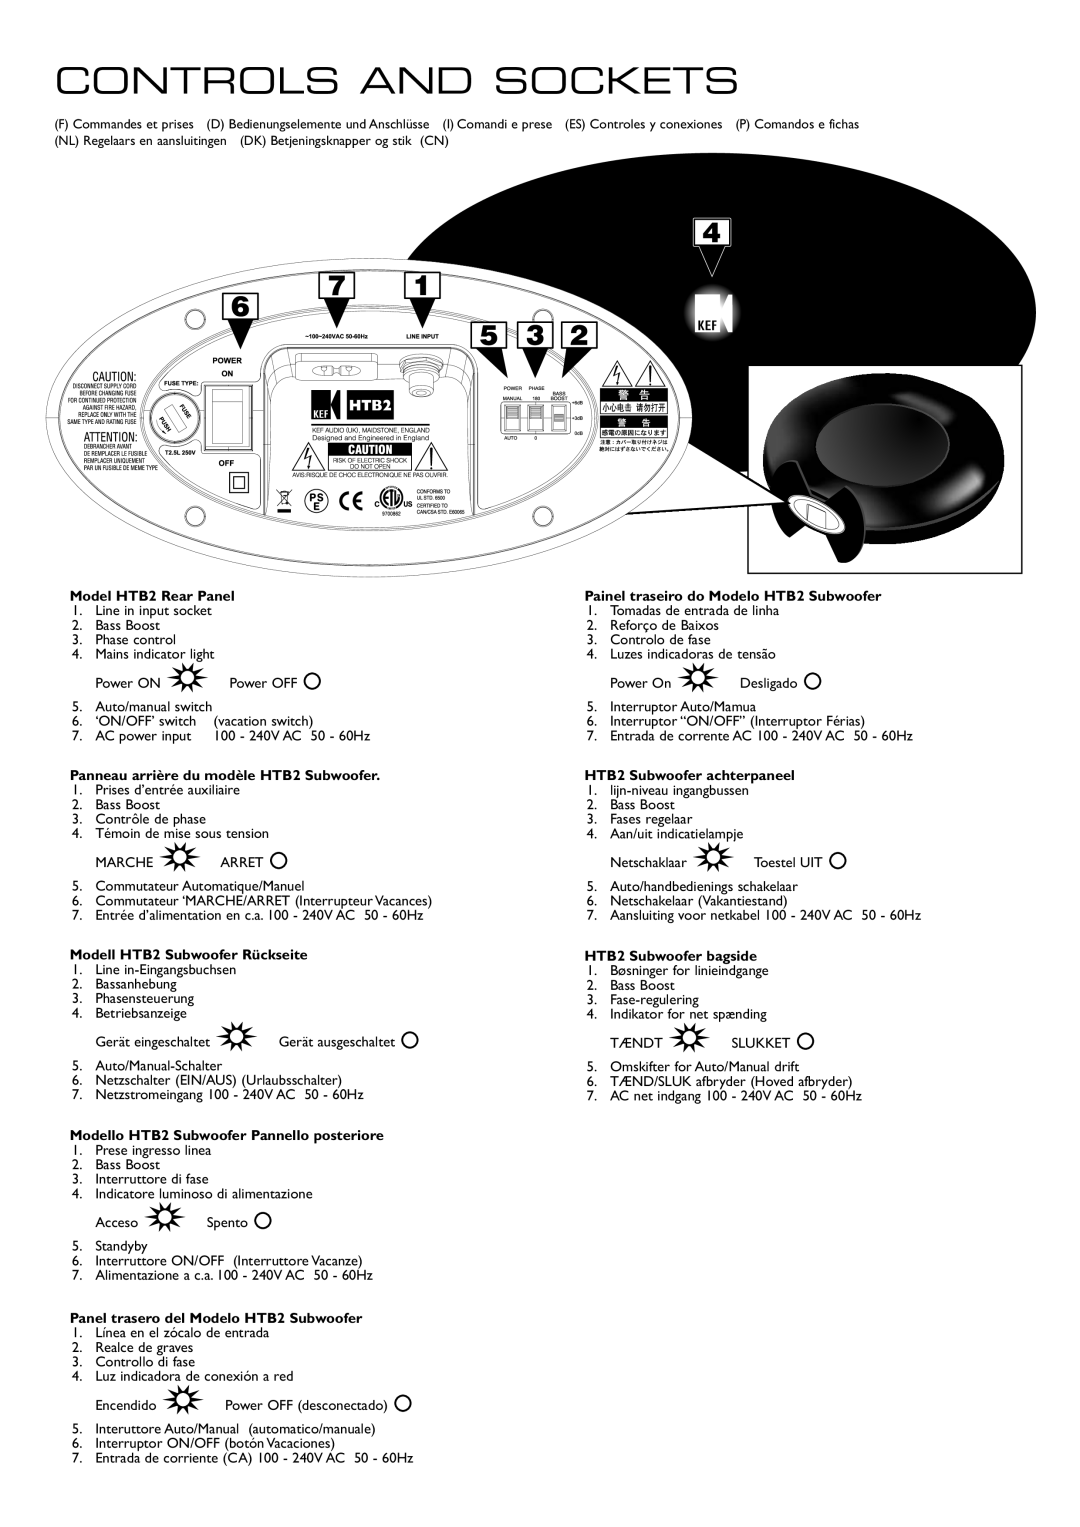 KEF Audio Controls And Sockets, Panneau arriè, du modèle HTB2 Subwoofer, Modell HTB2 Subwoof r Rückseite 